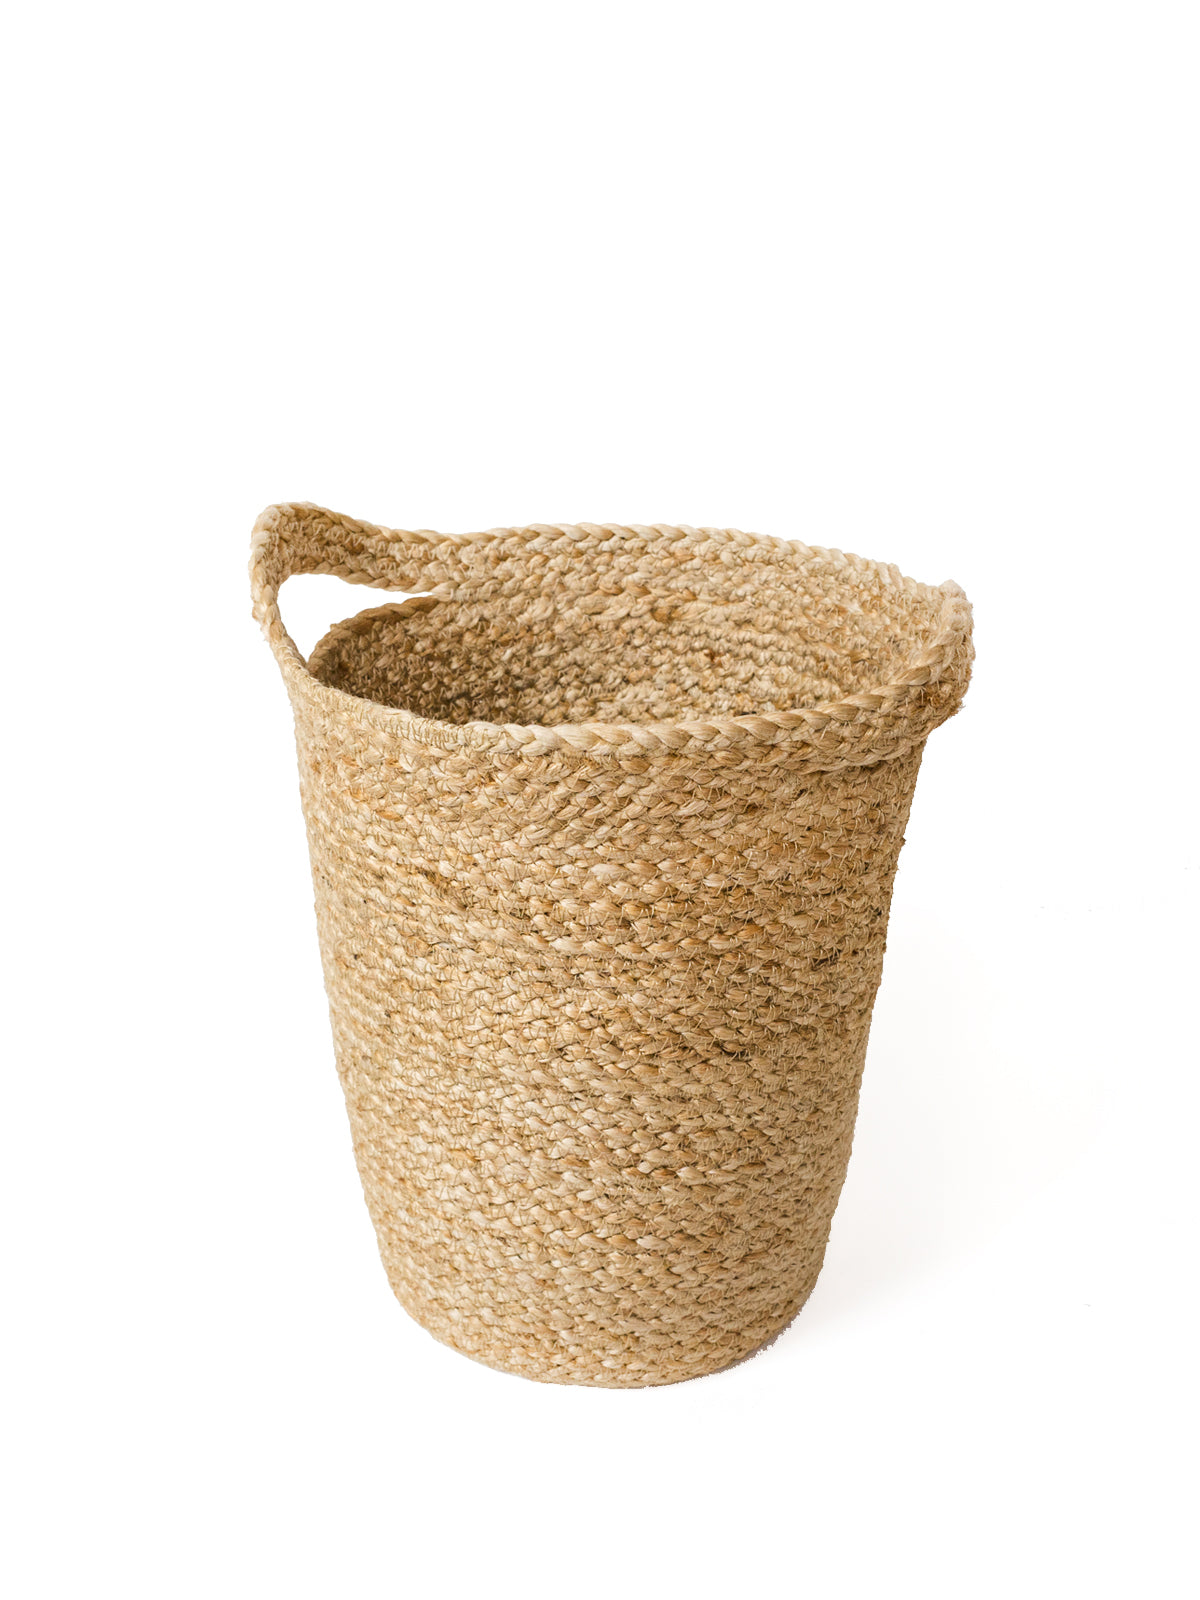 Kata Basket with Slit Handle - BagLunchproduct,corp